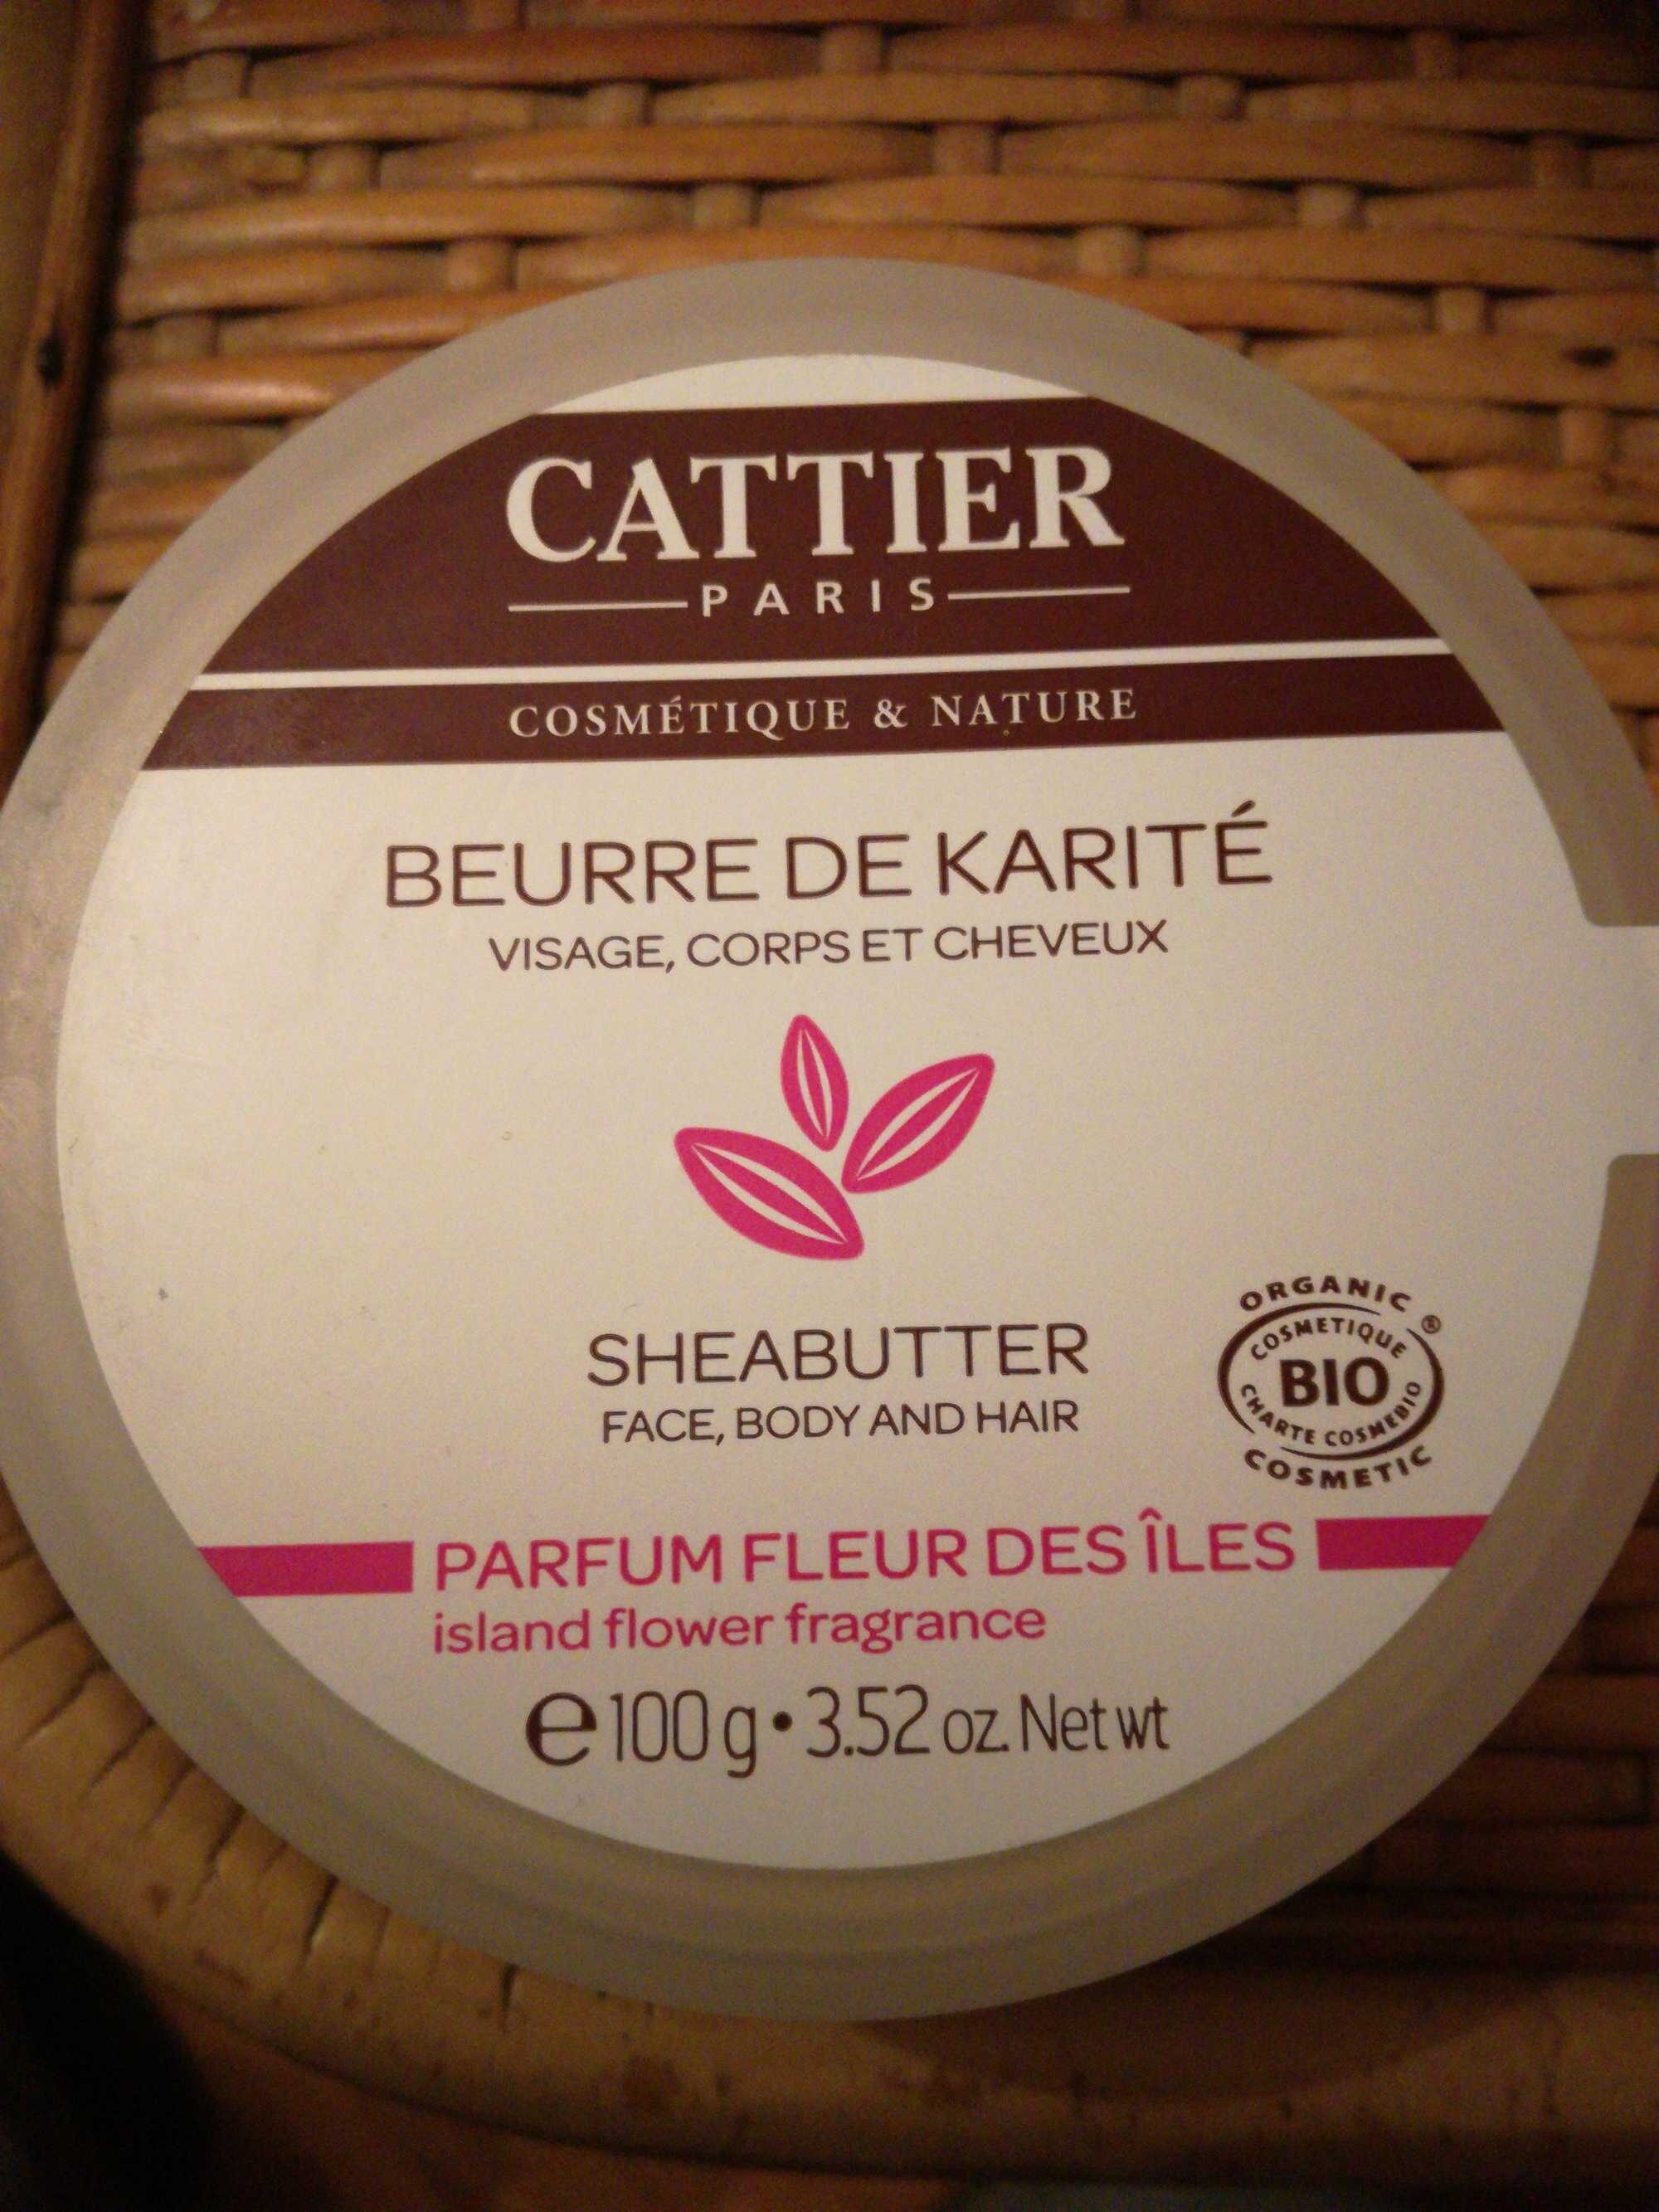 Beurre de karité parfum fleur des îles - Produit - fr